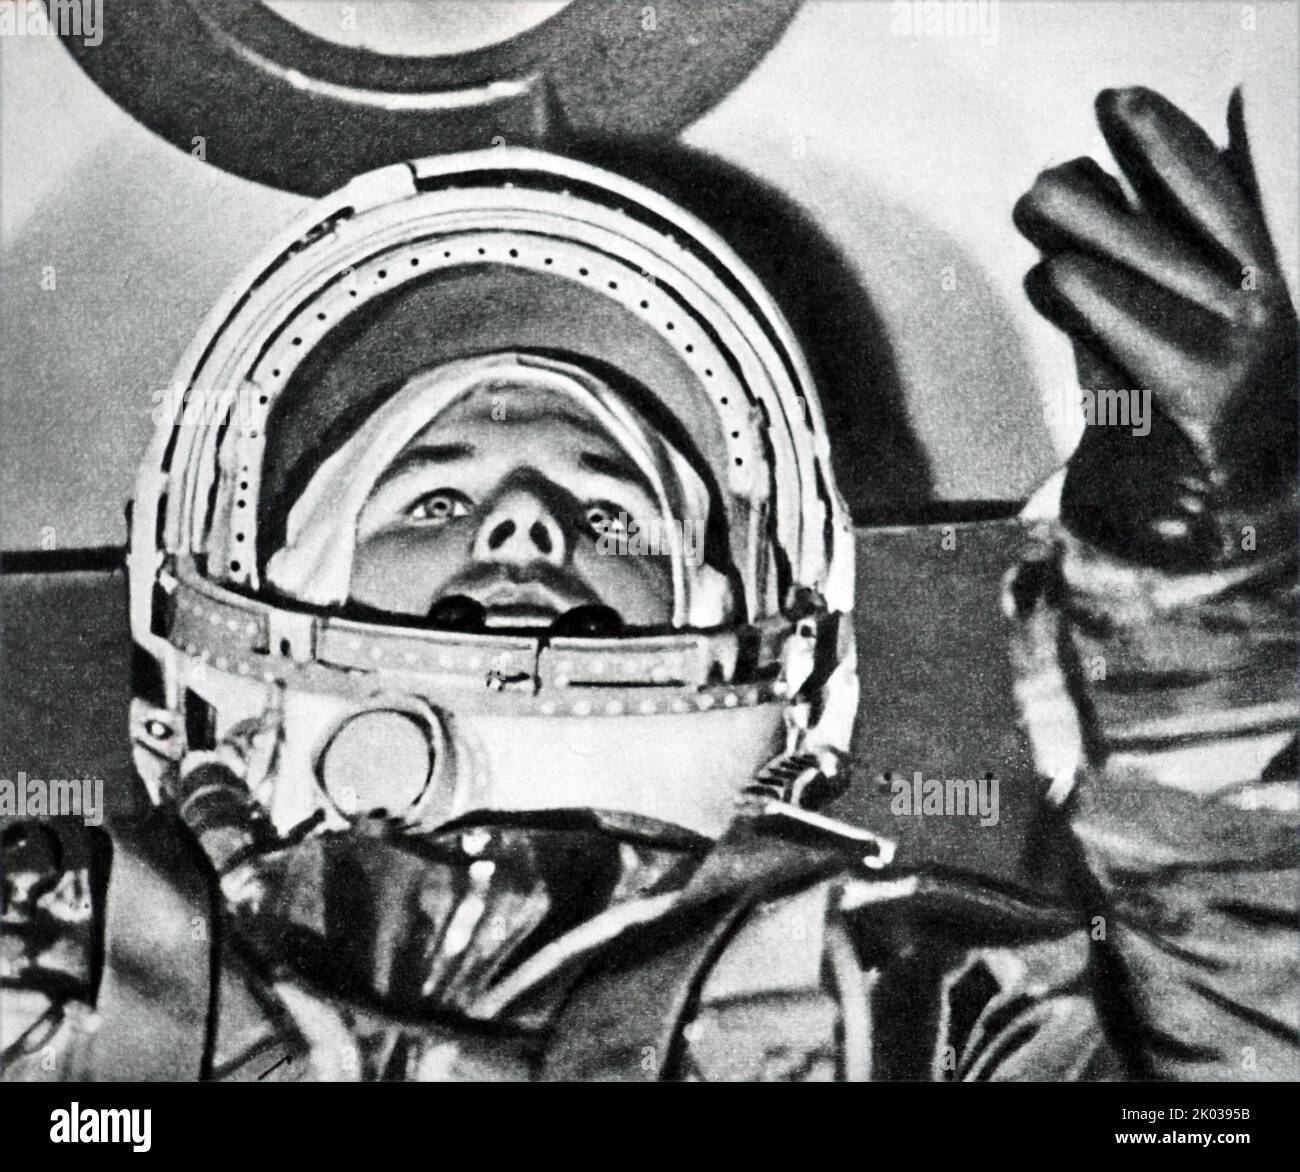 Vostok 1 war die erste Raumfahrt des Vostok-Programms und die erste menschliche Raumfahrt in der Geschichte. Am 12. April 1961 vom Kosmodrom Baikonur aus gestartet, mit dem sowjetischen Kosmonauten Juri Gagarin an Bord, was ihn zum ersten Menschen macht, der in den Weltraum kam. Stockfoto